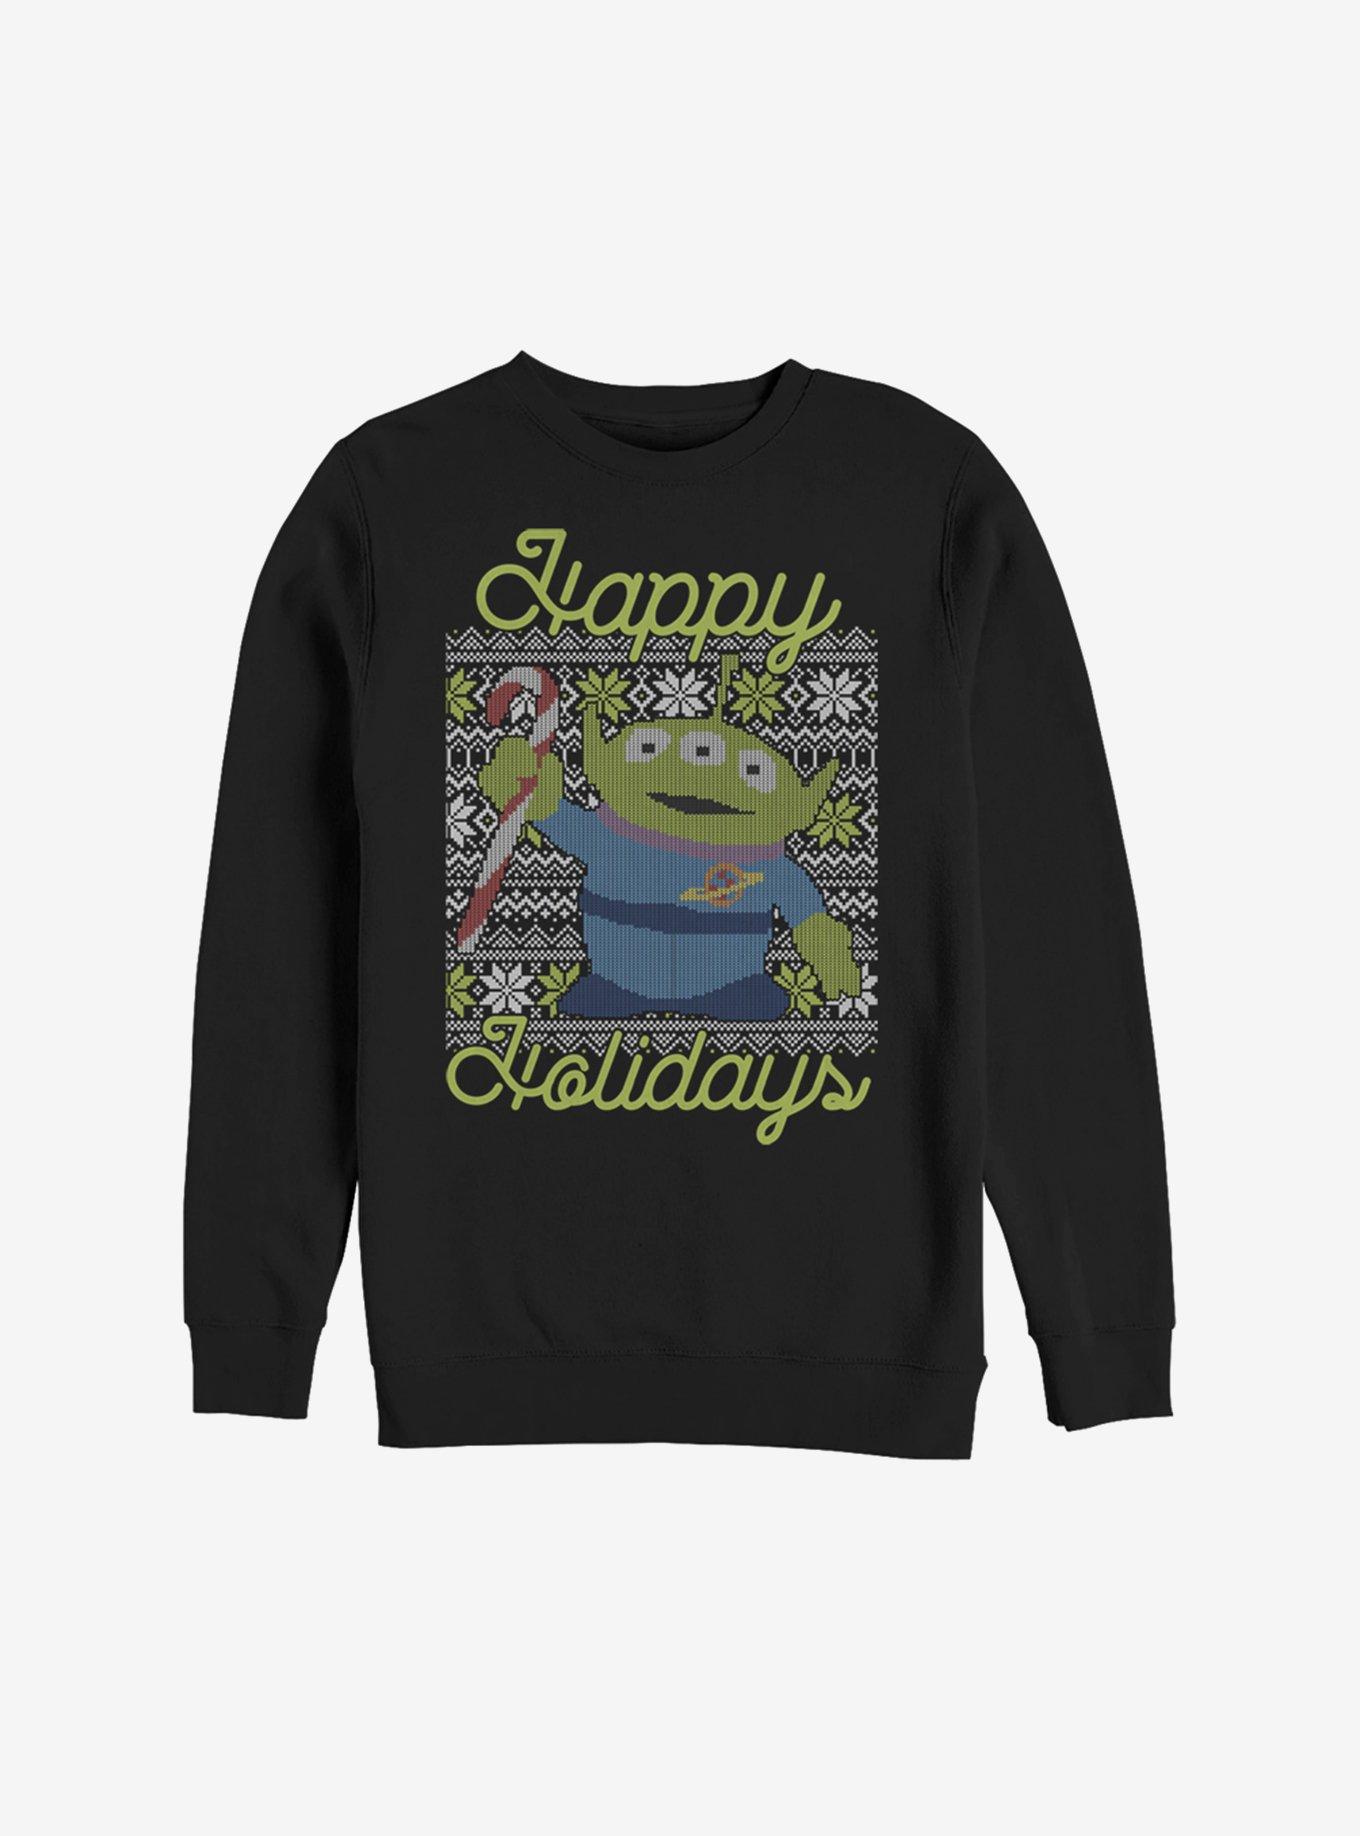 Disney Pixar Toy Story Alien Christmas Pattern Sweatshirt, BLACK, hi-res